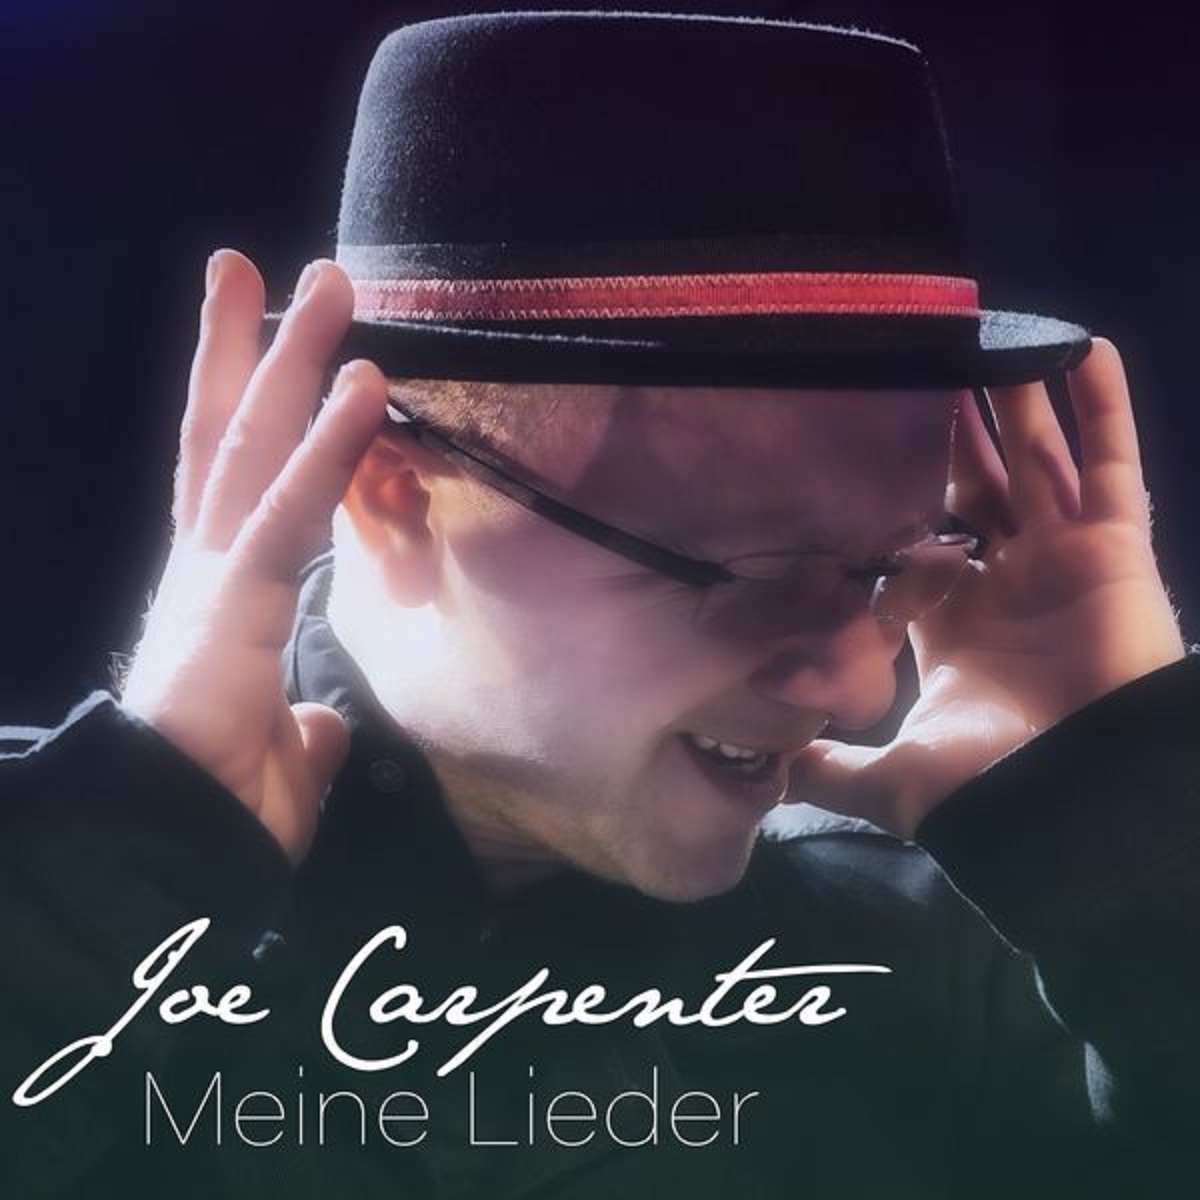 Joe Carpenter - Meine Lieder (2022)